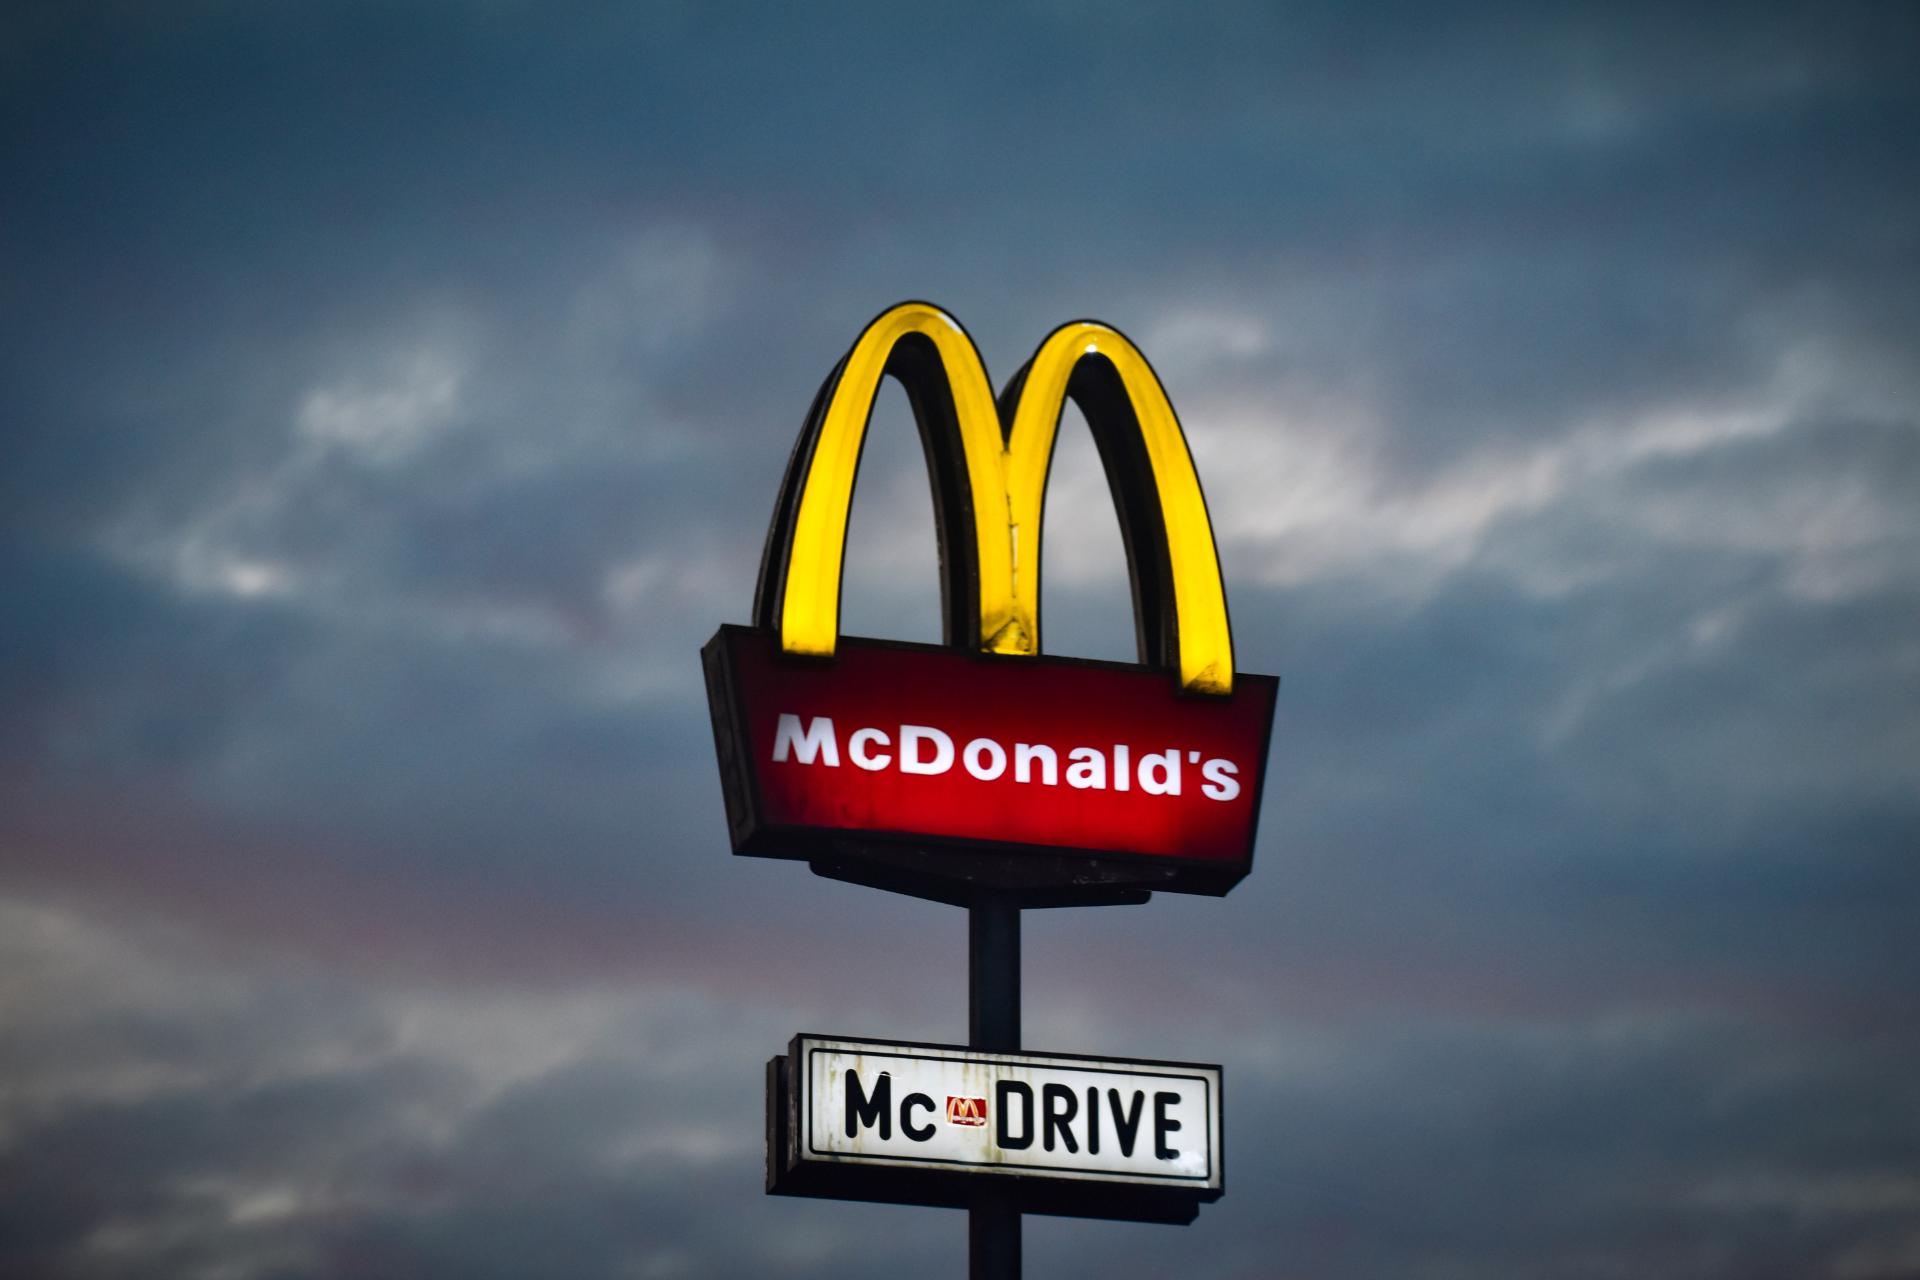 der Name McDonald's ist auf der ganzen Welt bekannt. Sie sollten versuchen, diesen Erfolg zu wiederholen, indem Sie Ihr Dessertgeschäft richtig benennen